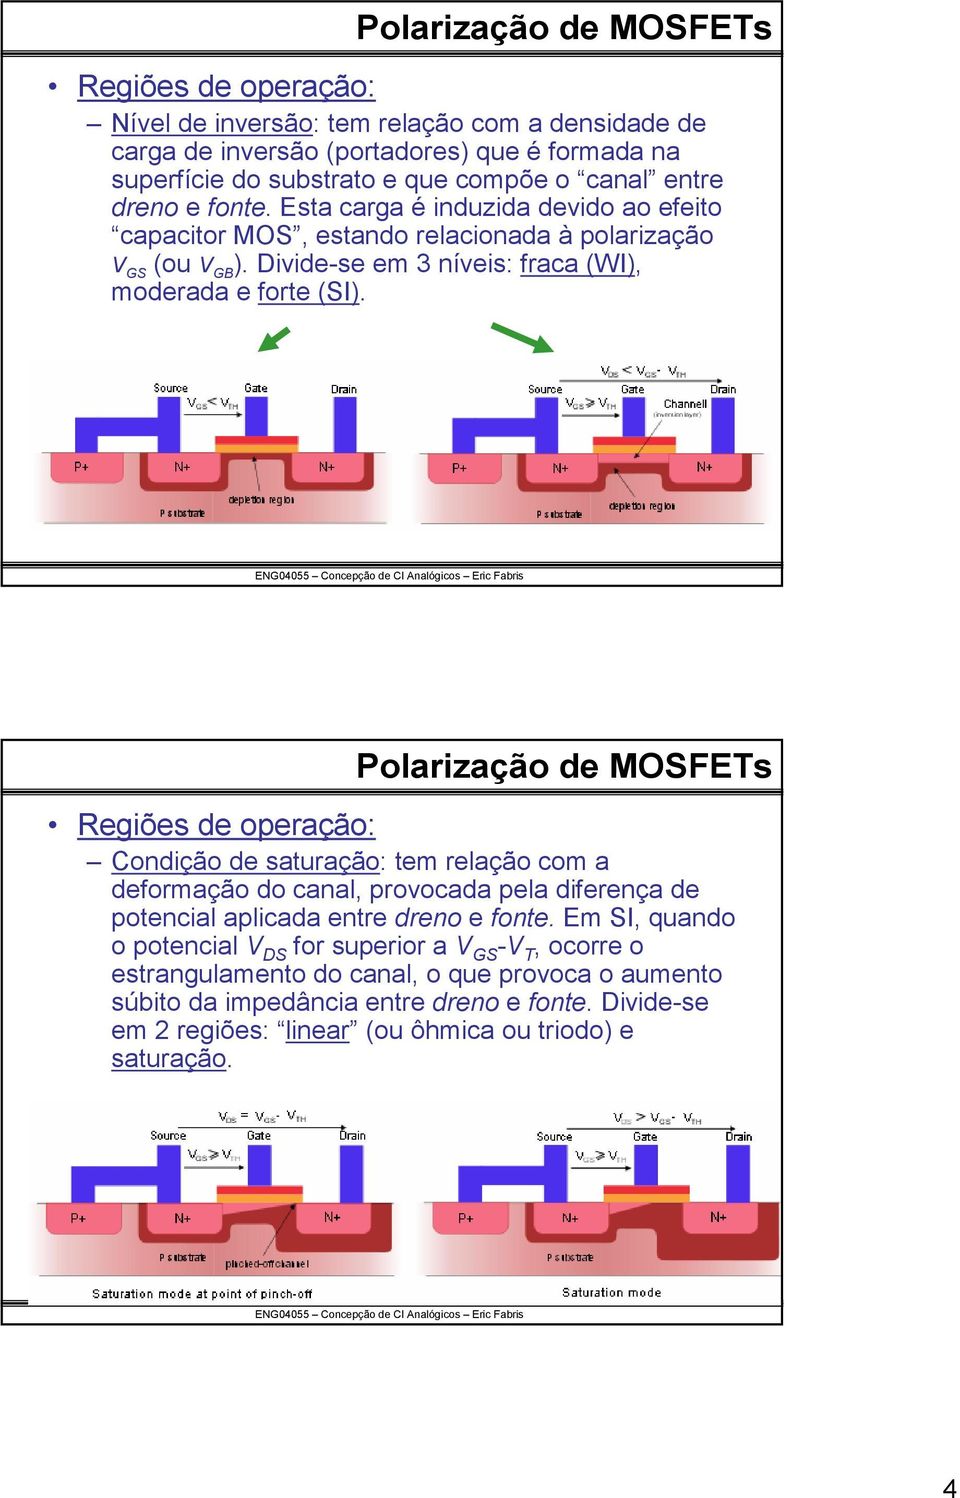 Polarização de MOSFETs Regiões de operação: Condição de sauração: em relação com a deformação do canal, provocada pela diferença de poencial aplicada enre dreno e fone.